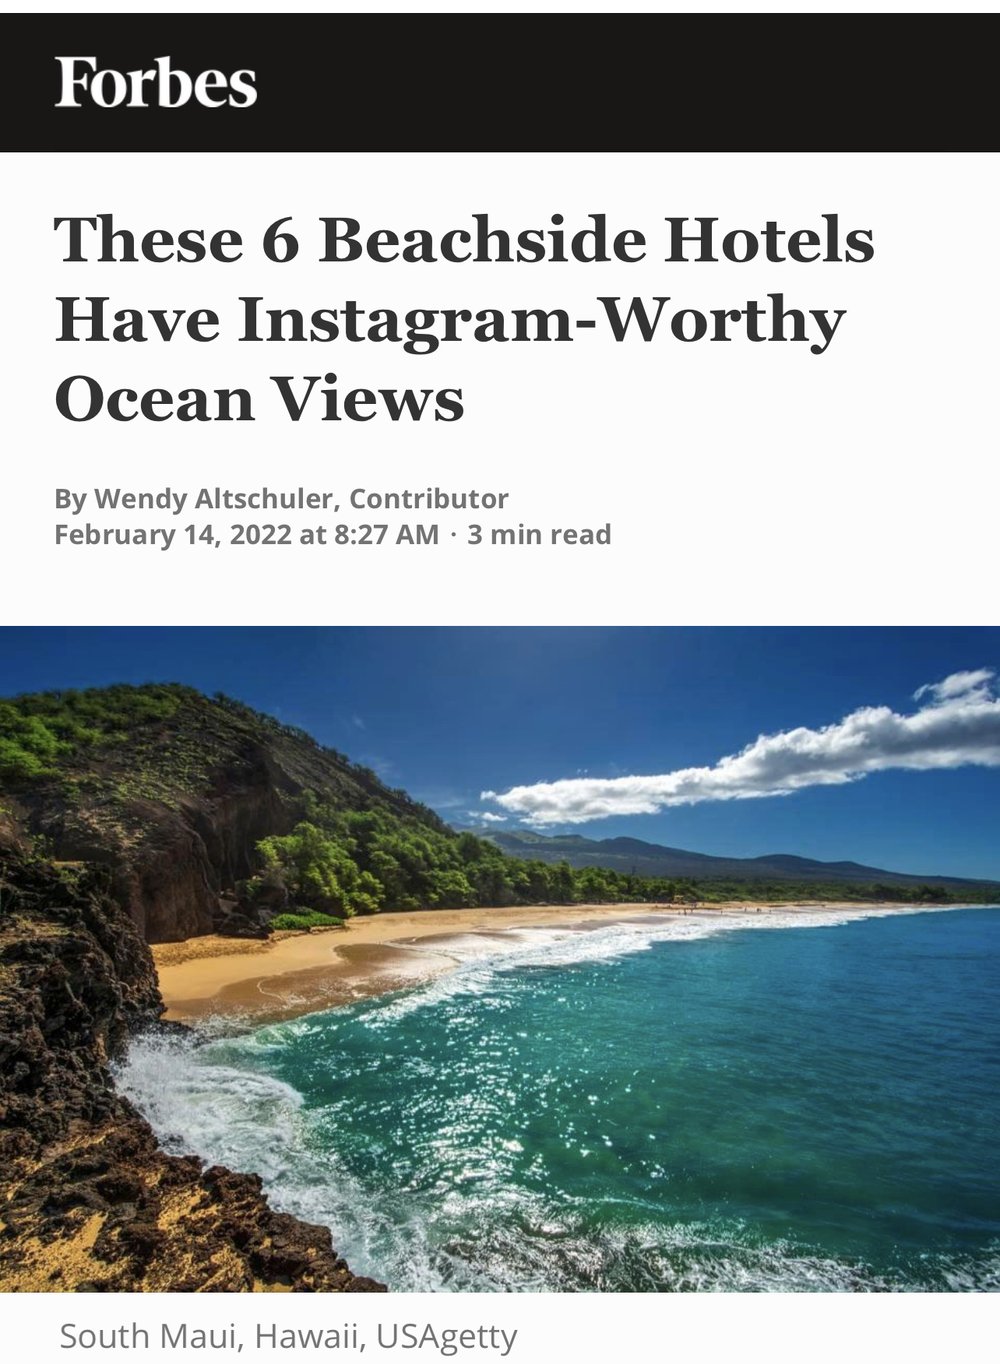 These 6 Beachside Hotels Have Instagram-Worthy Ocean Views